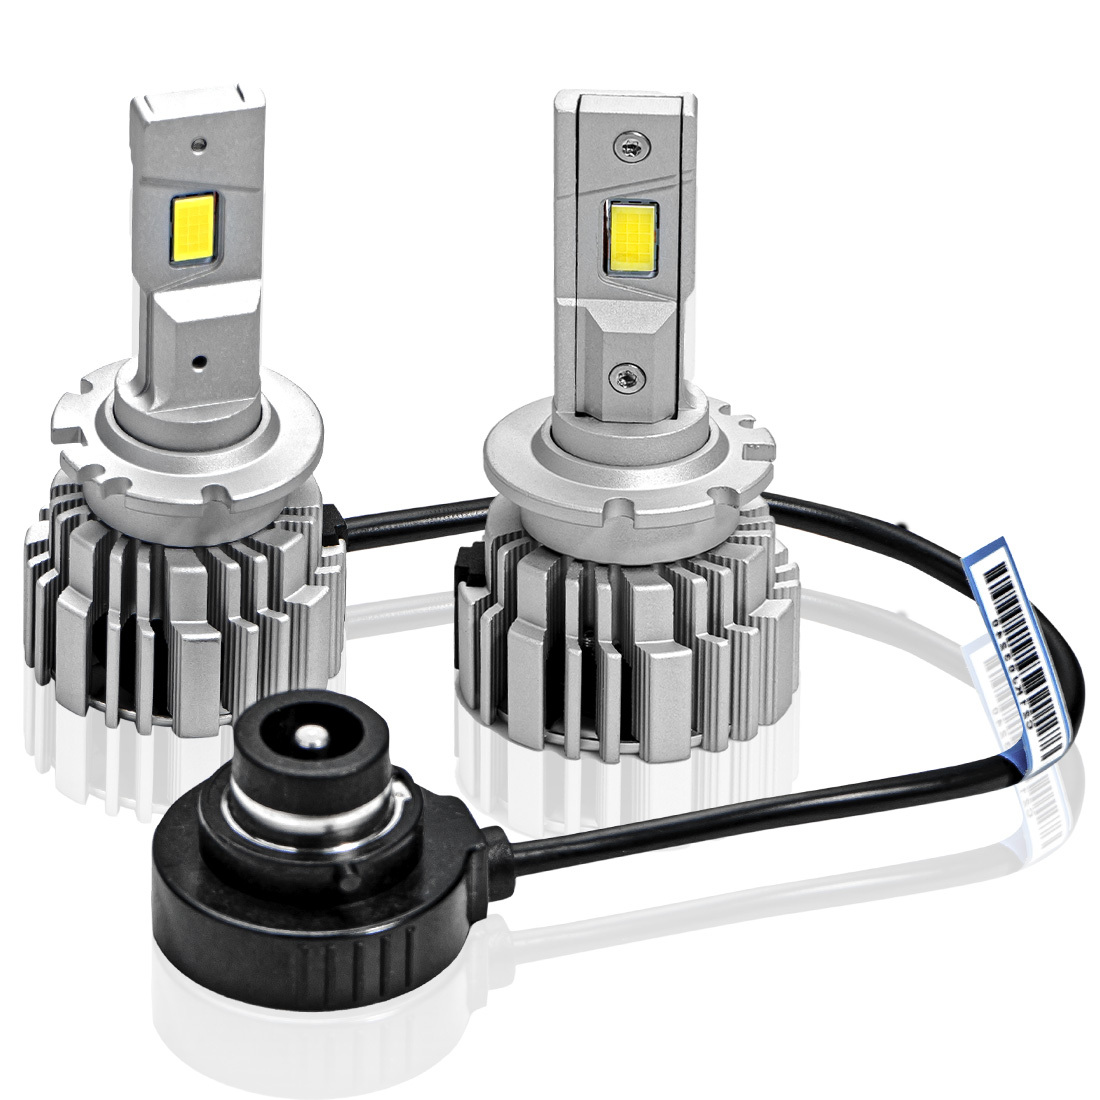 純正HID交換LED バルブ HID交換 LED 化 コンパクトサイズ D2R D2S D2C D4R D4S D4C シェアスタイル